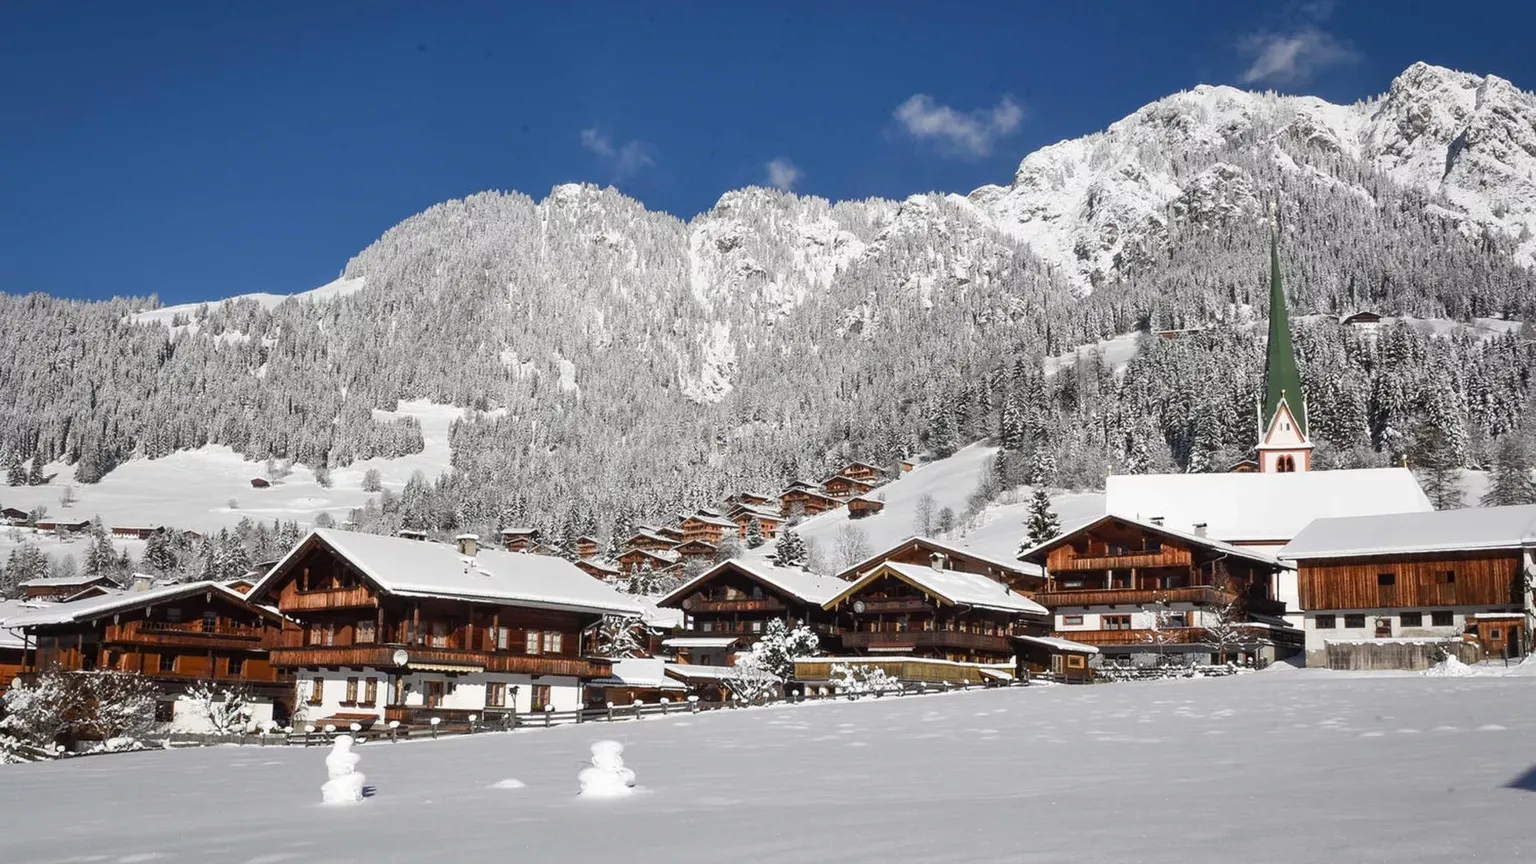 Alpbach | Tyrol Region, Austria - Rated 5